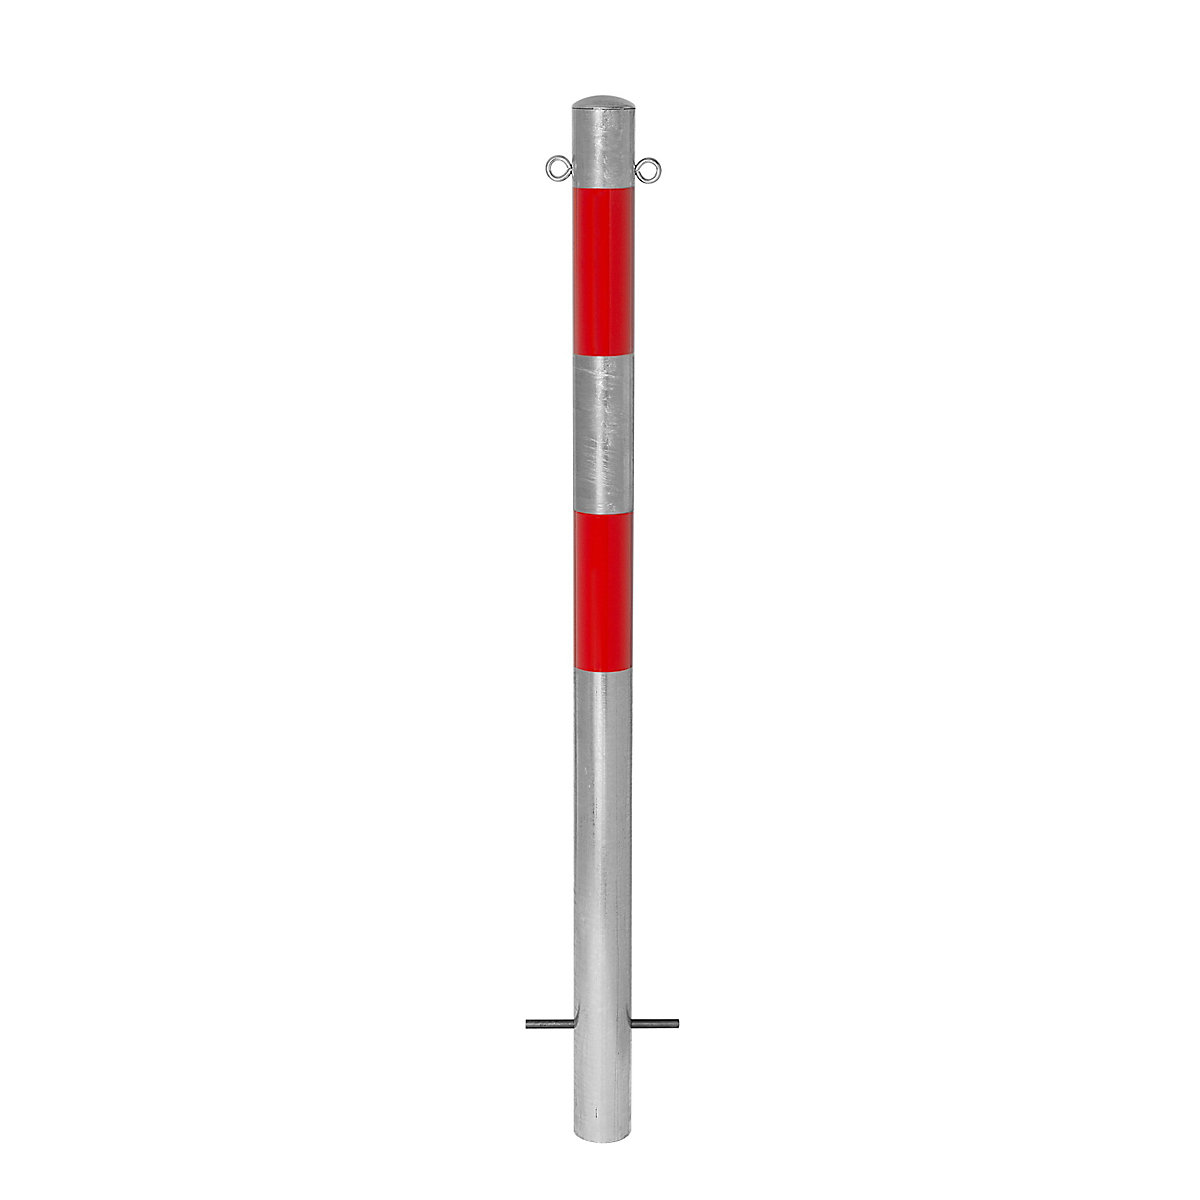 Stup za ograđivanje, za betoniranje, Ø 76 mm, vruće pocinčana izvedba / reflektiranje u crvenoj boji, 2 ušice-10